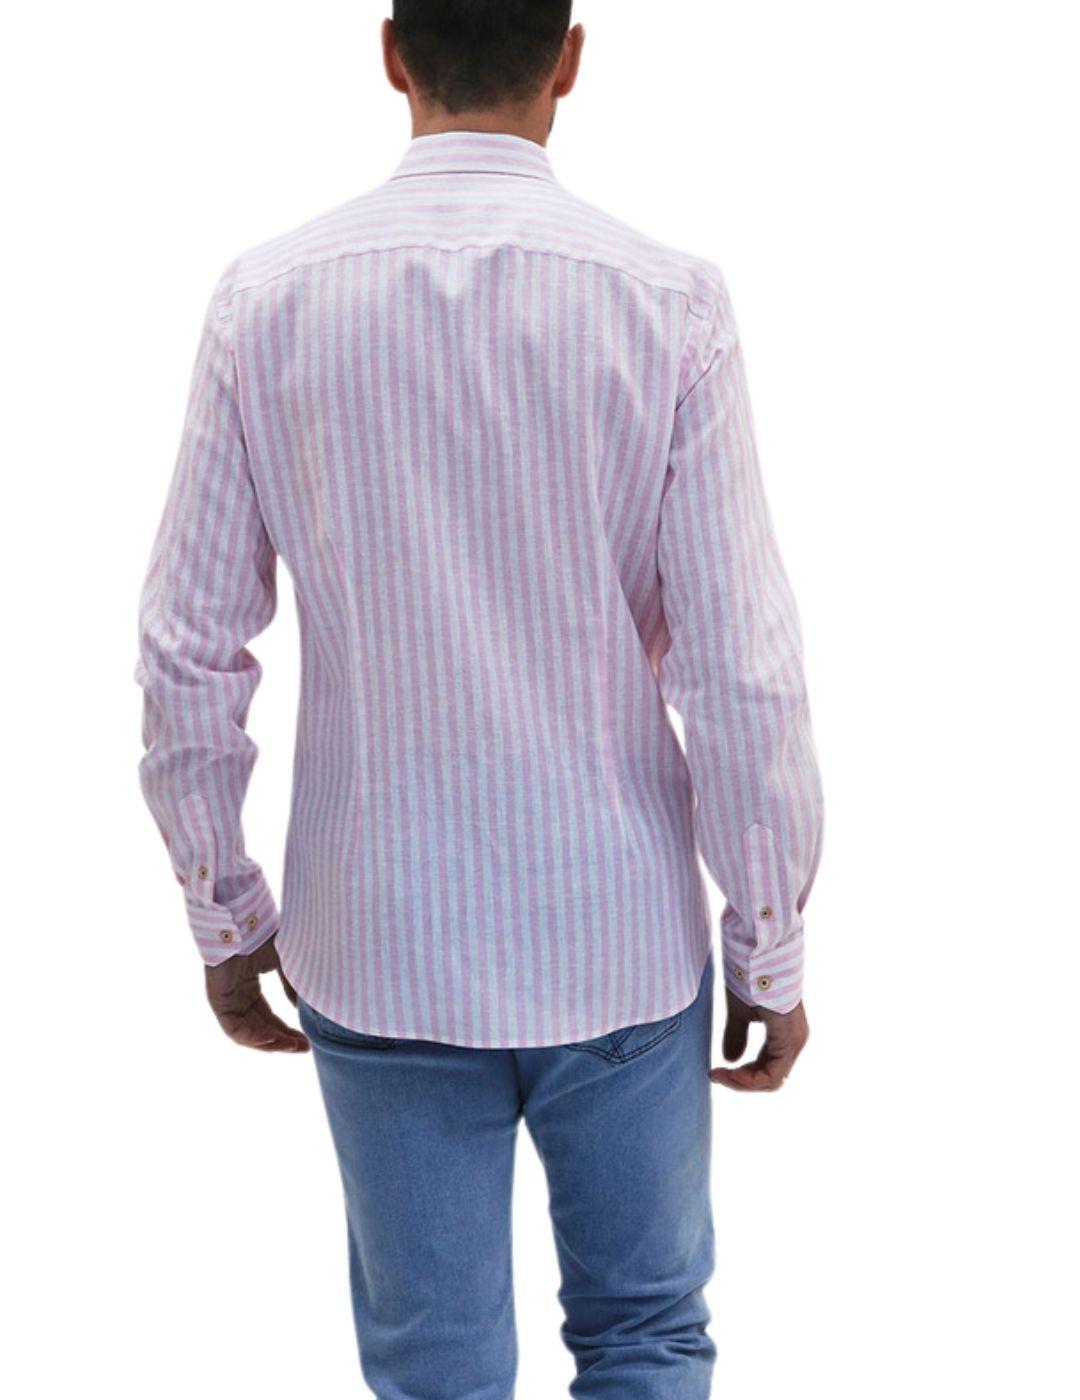 Camisa Florentino slim fit de lino con estampado a rayas